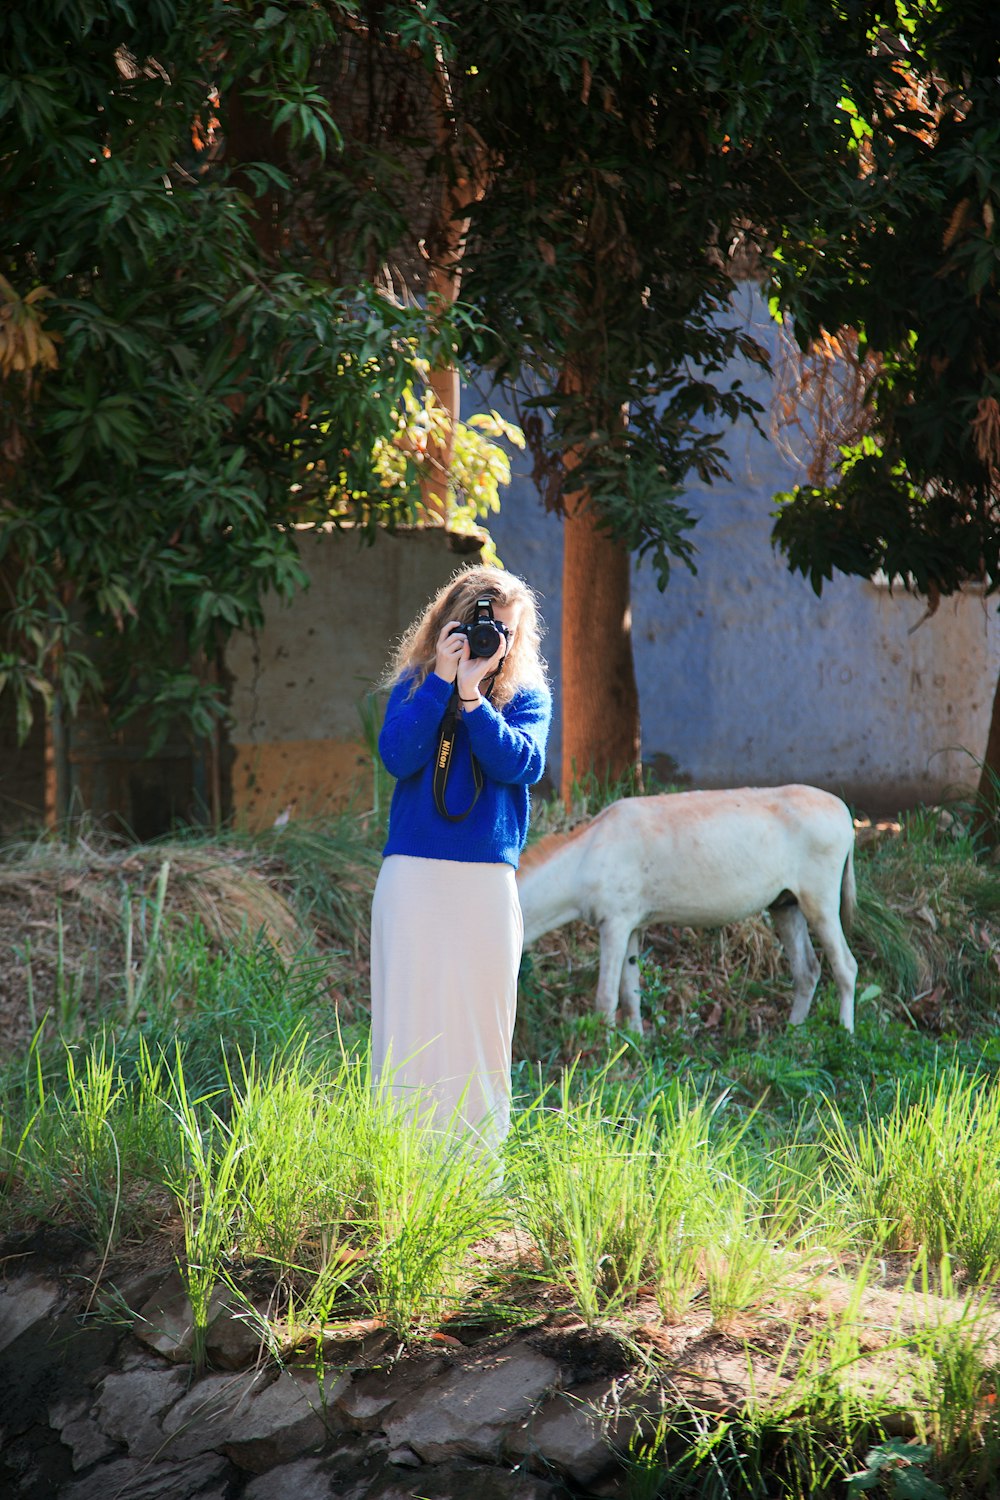 Une femme prend une photo d’une vache